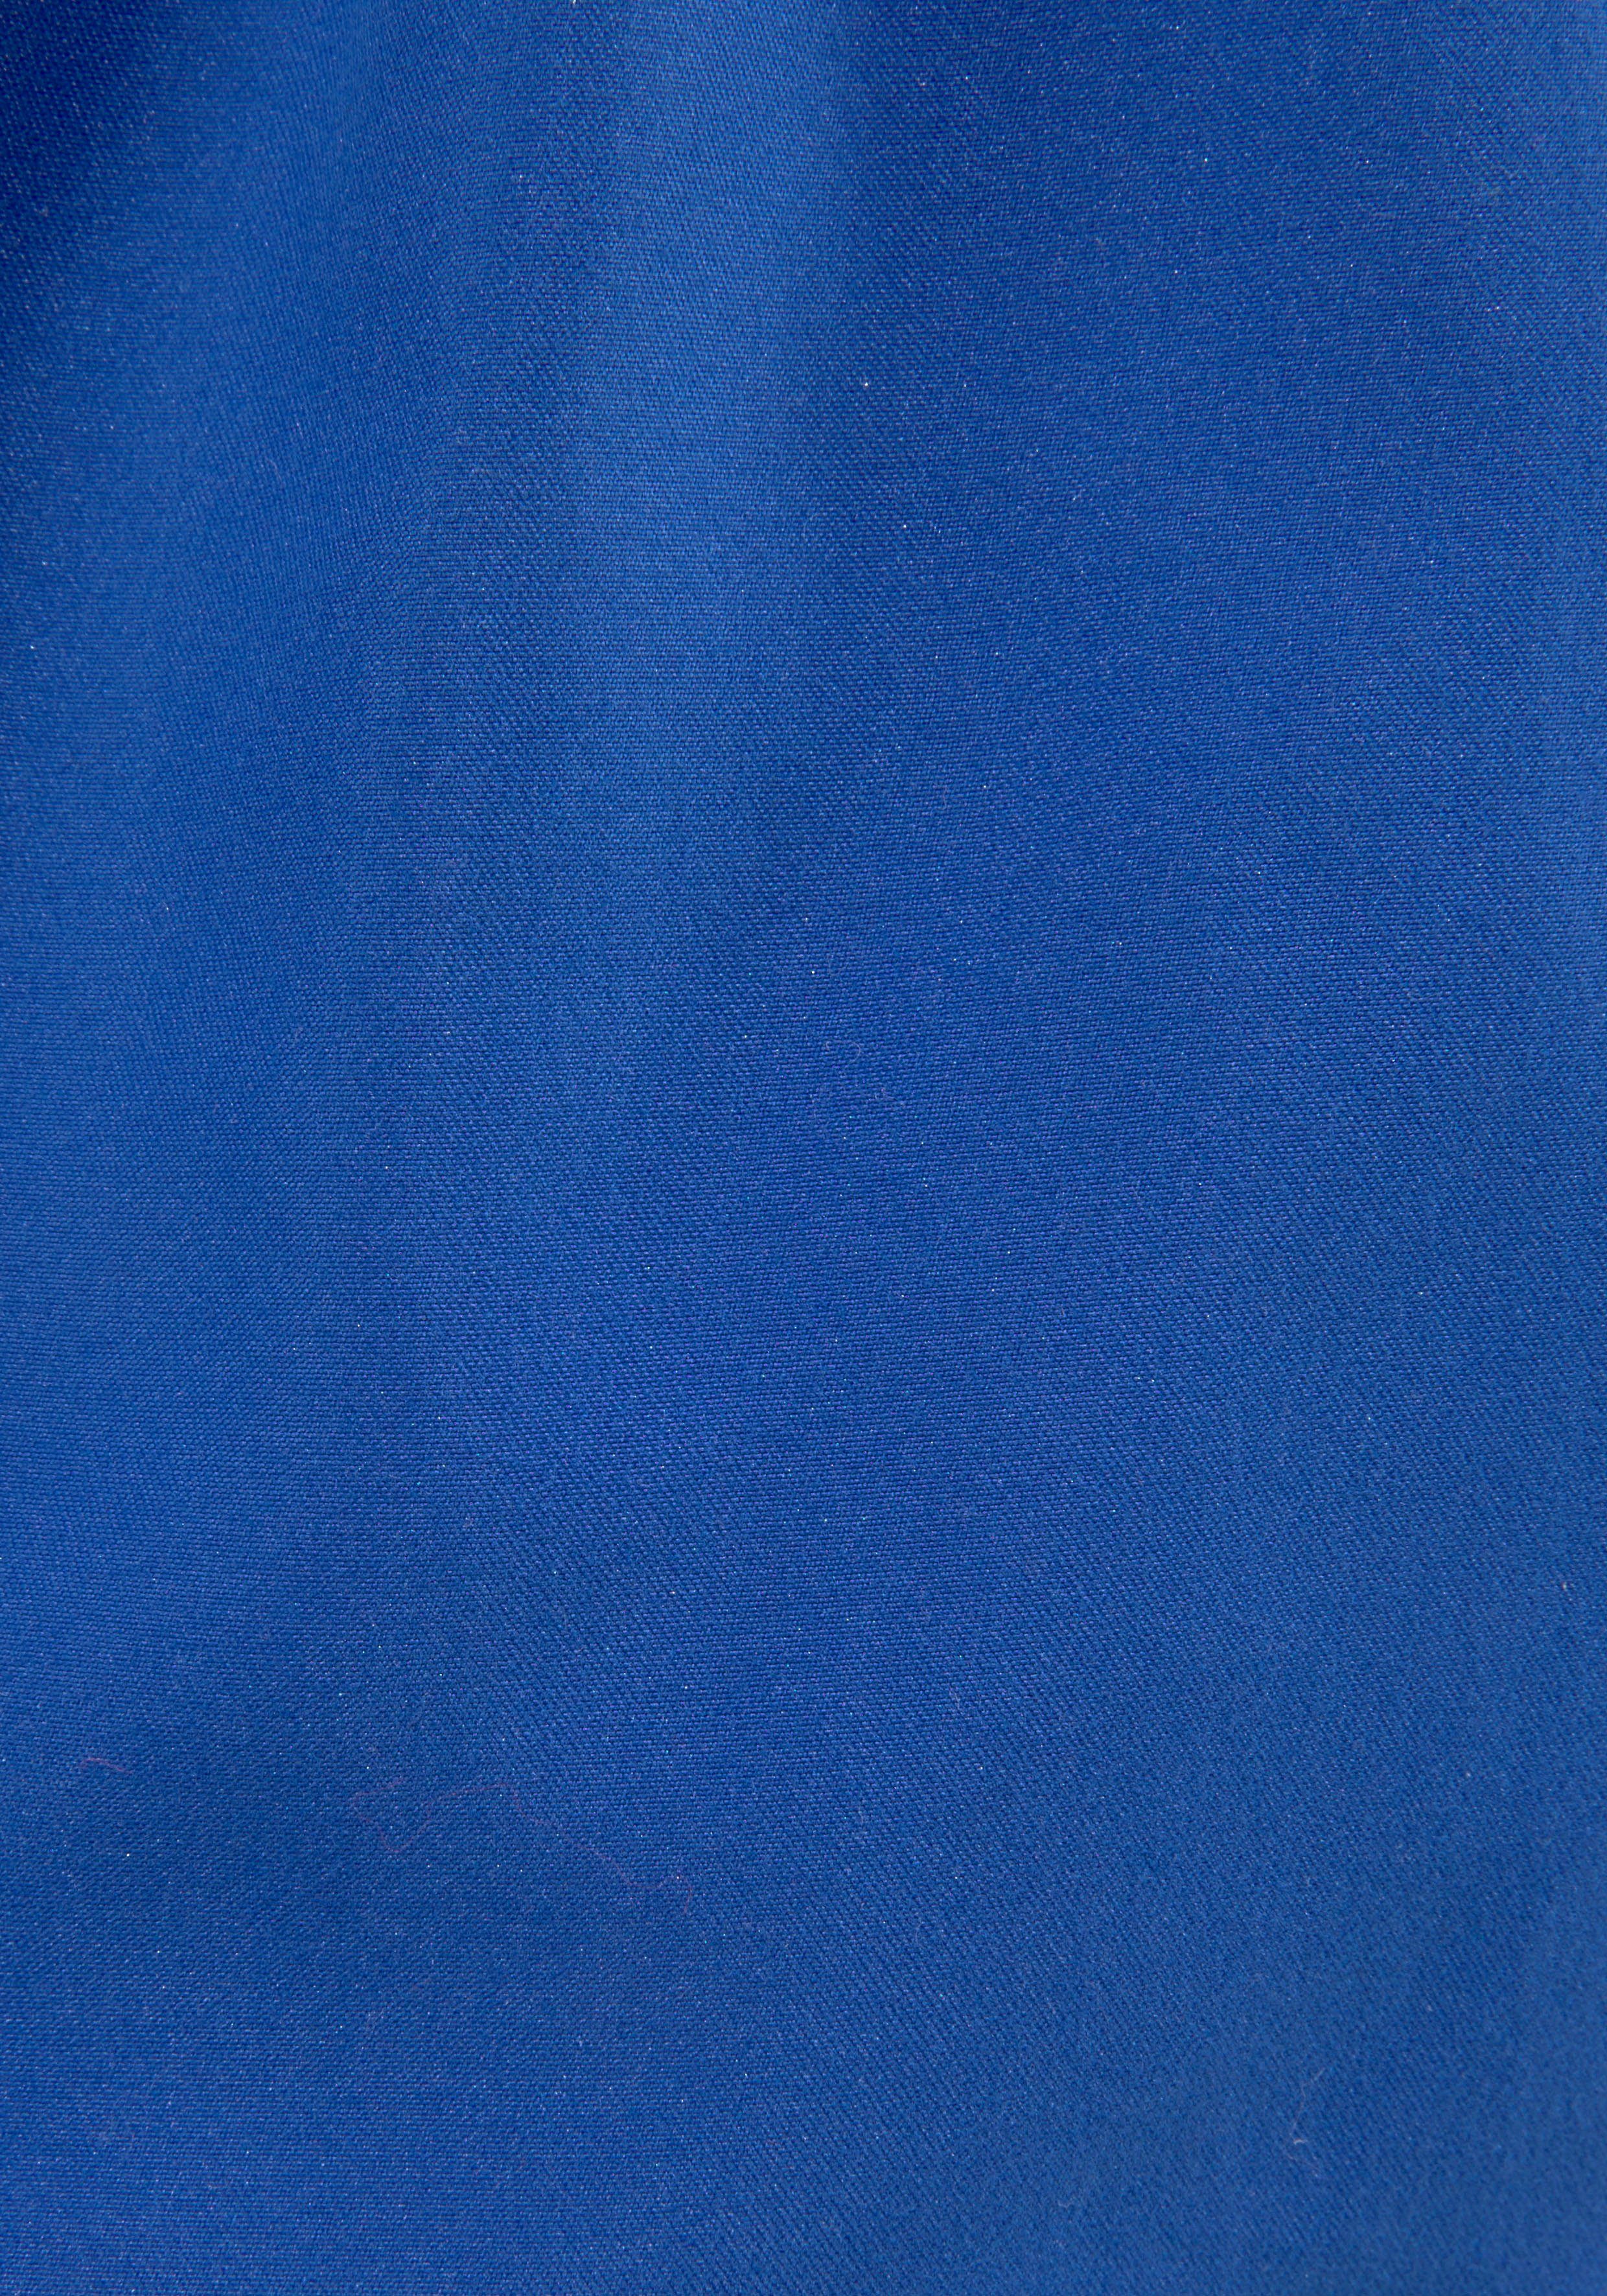 Nike Badeshorts mit royalblau Markenlogo 370 NESSB866